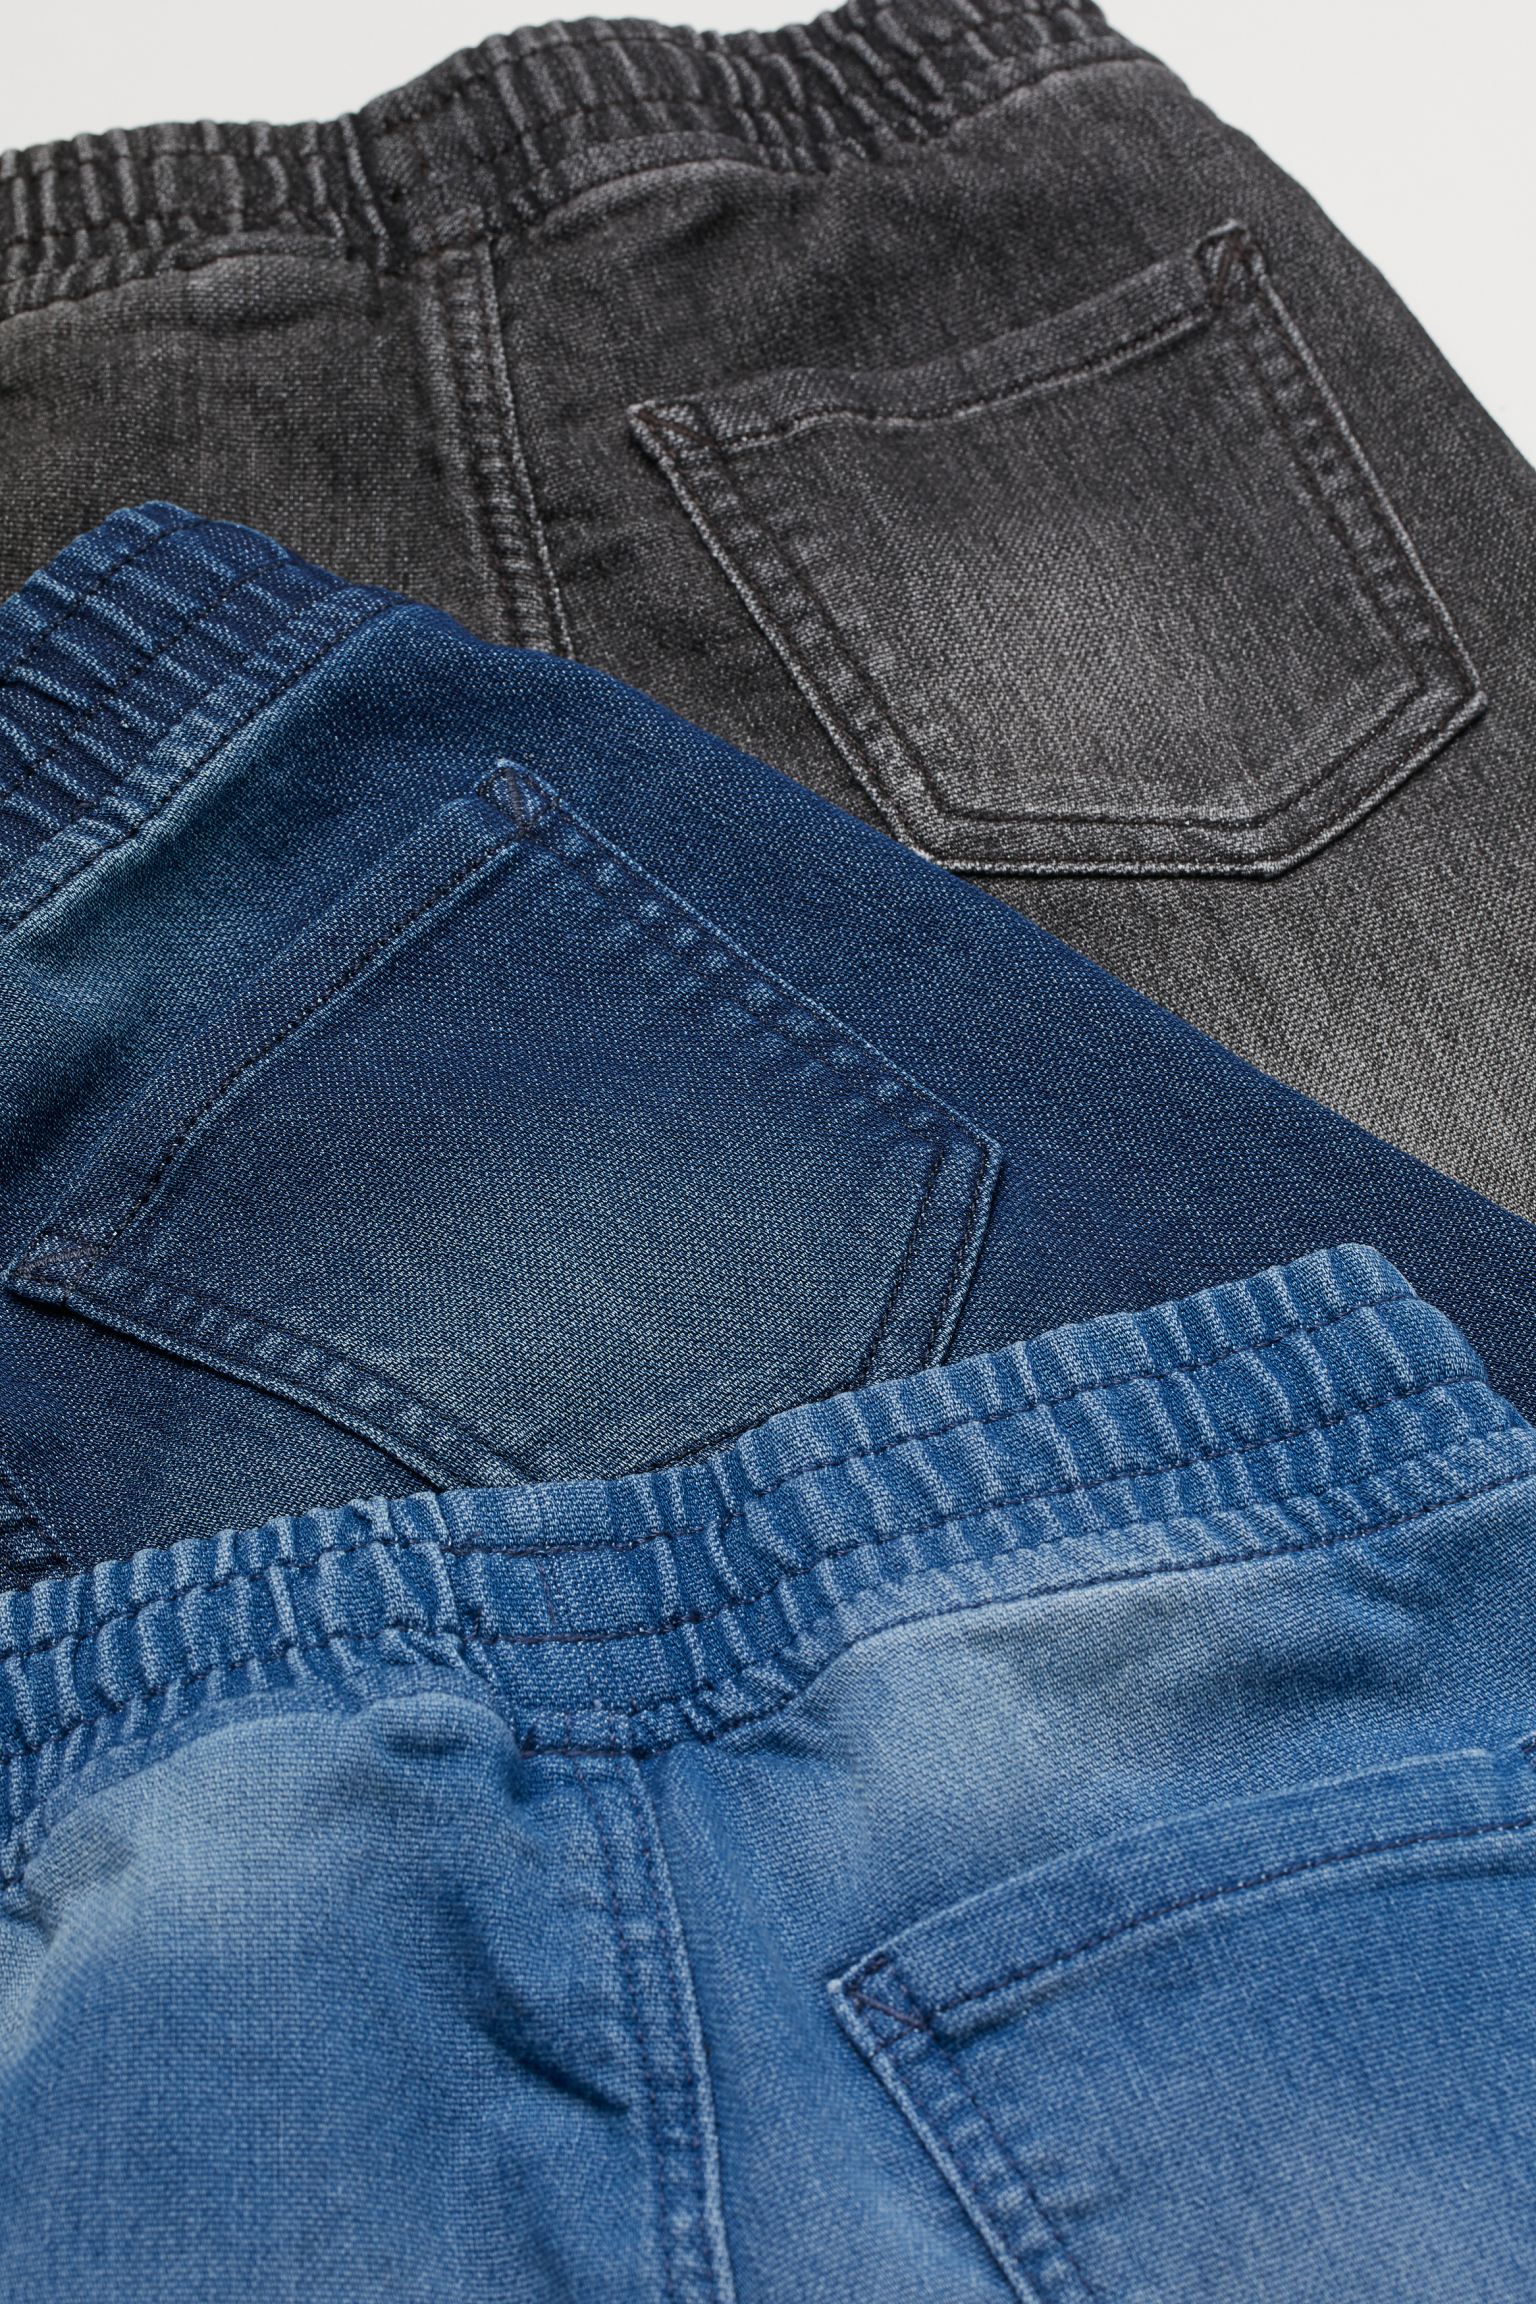 شلوارک جینز 31574 سایز 1.5 تا 10 سال مارک H&M